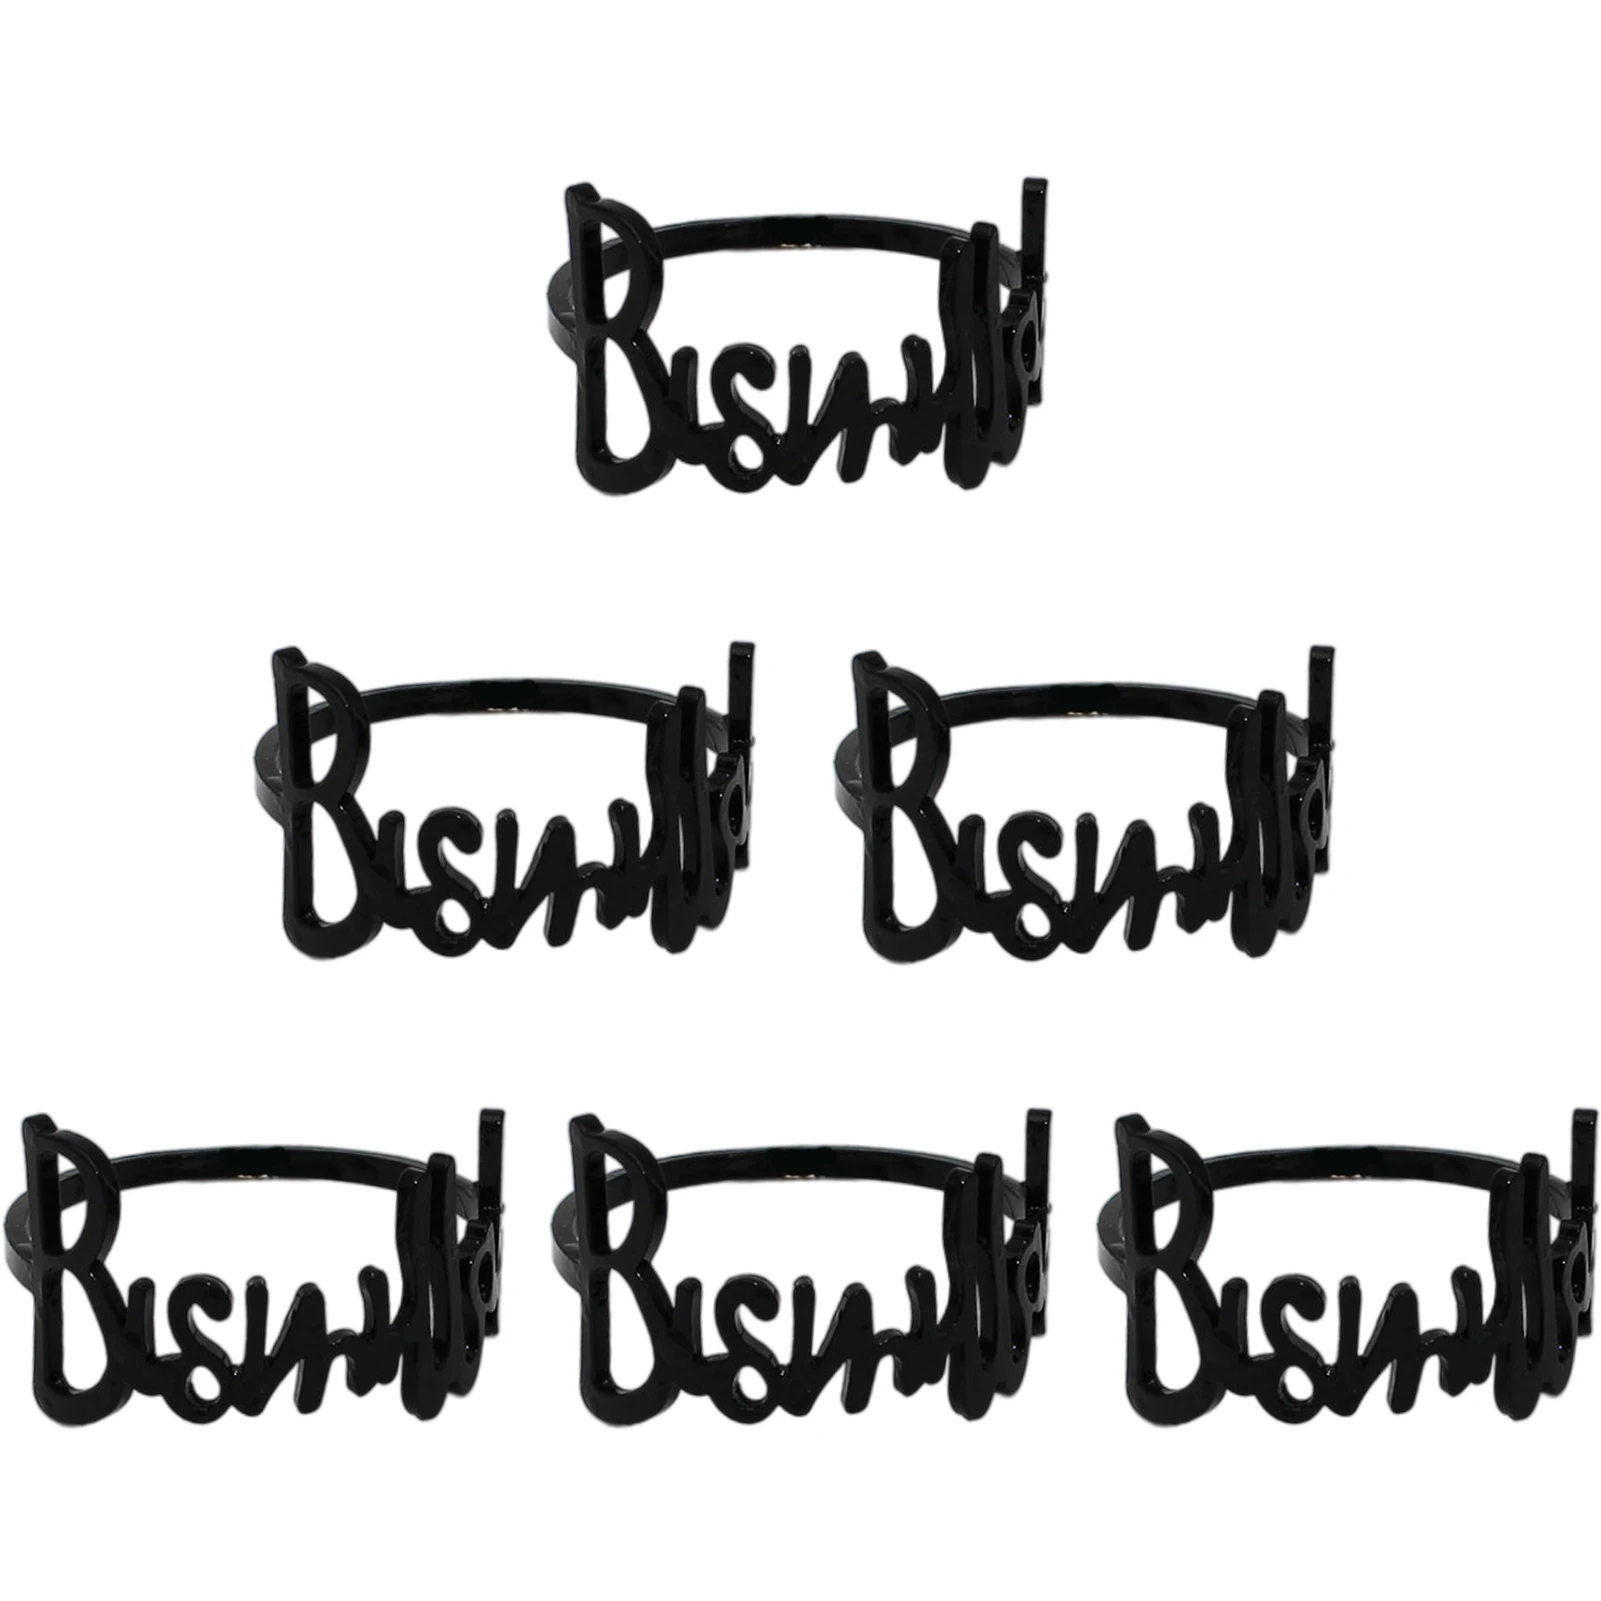 

Кольца для салфеток Bismillah с надписью кольцо Металлическое для салфетки Bismillah, набор из 6 кольцевых держателей, набор колец для салфеток для с...